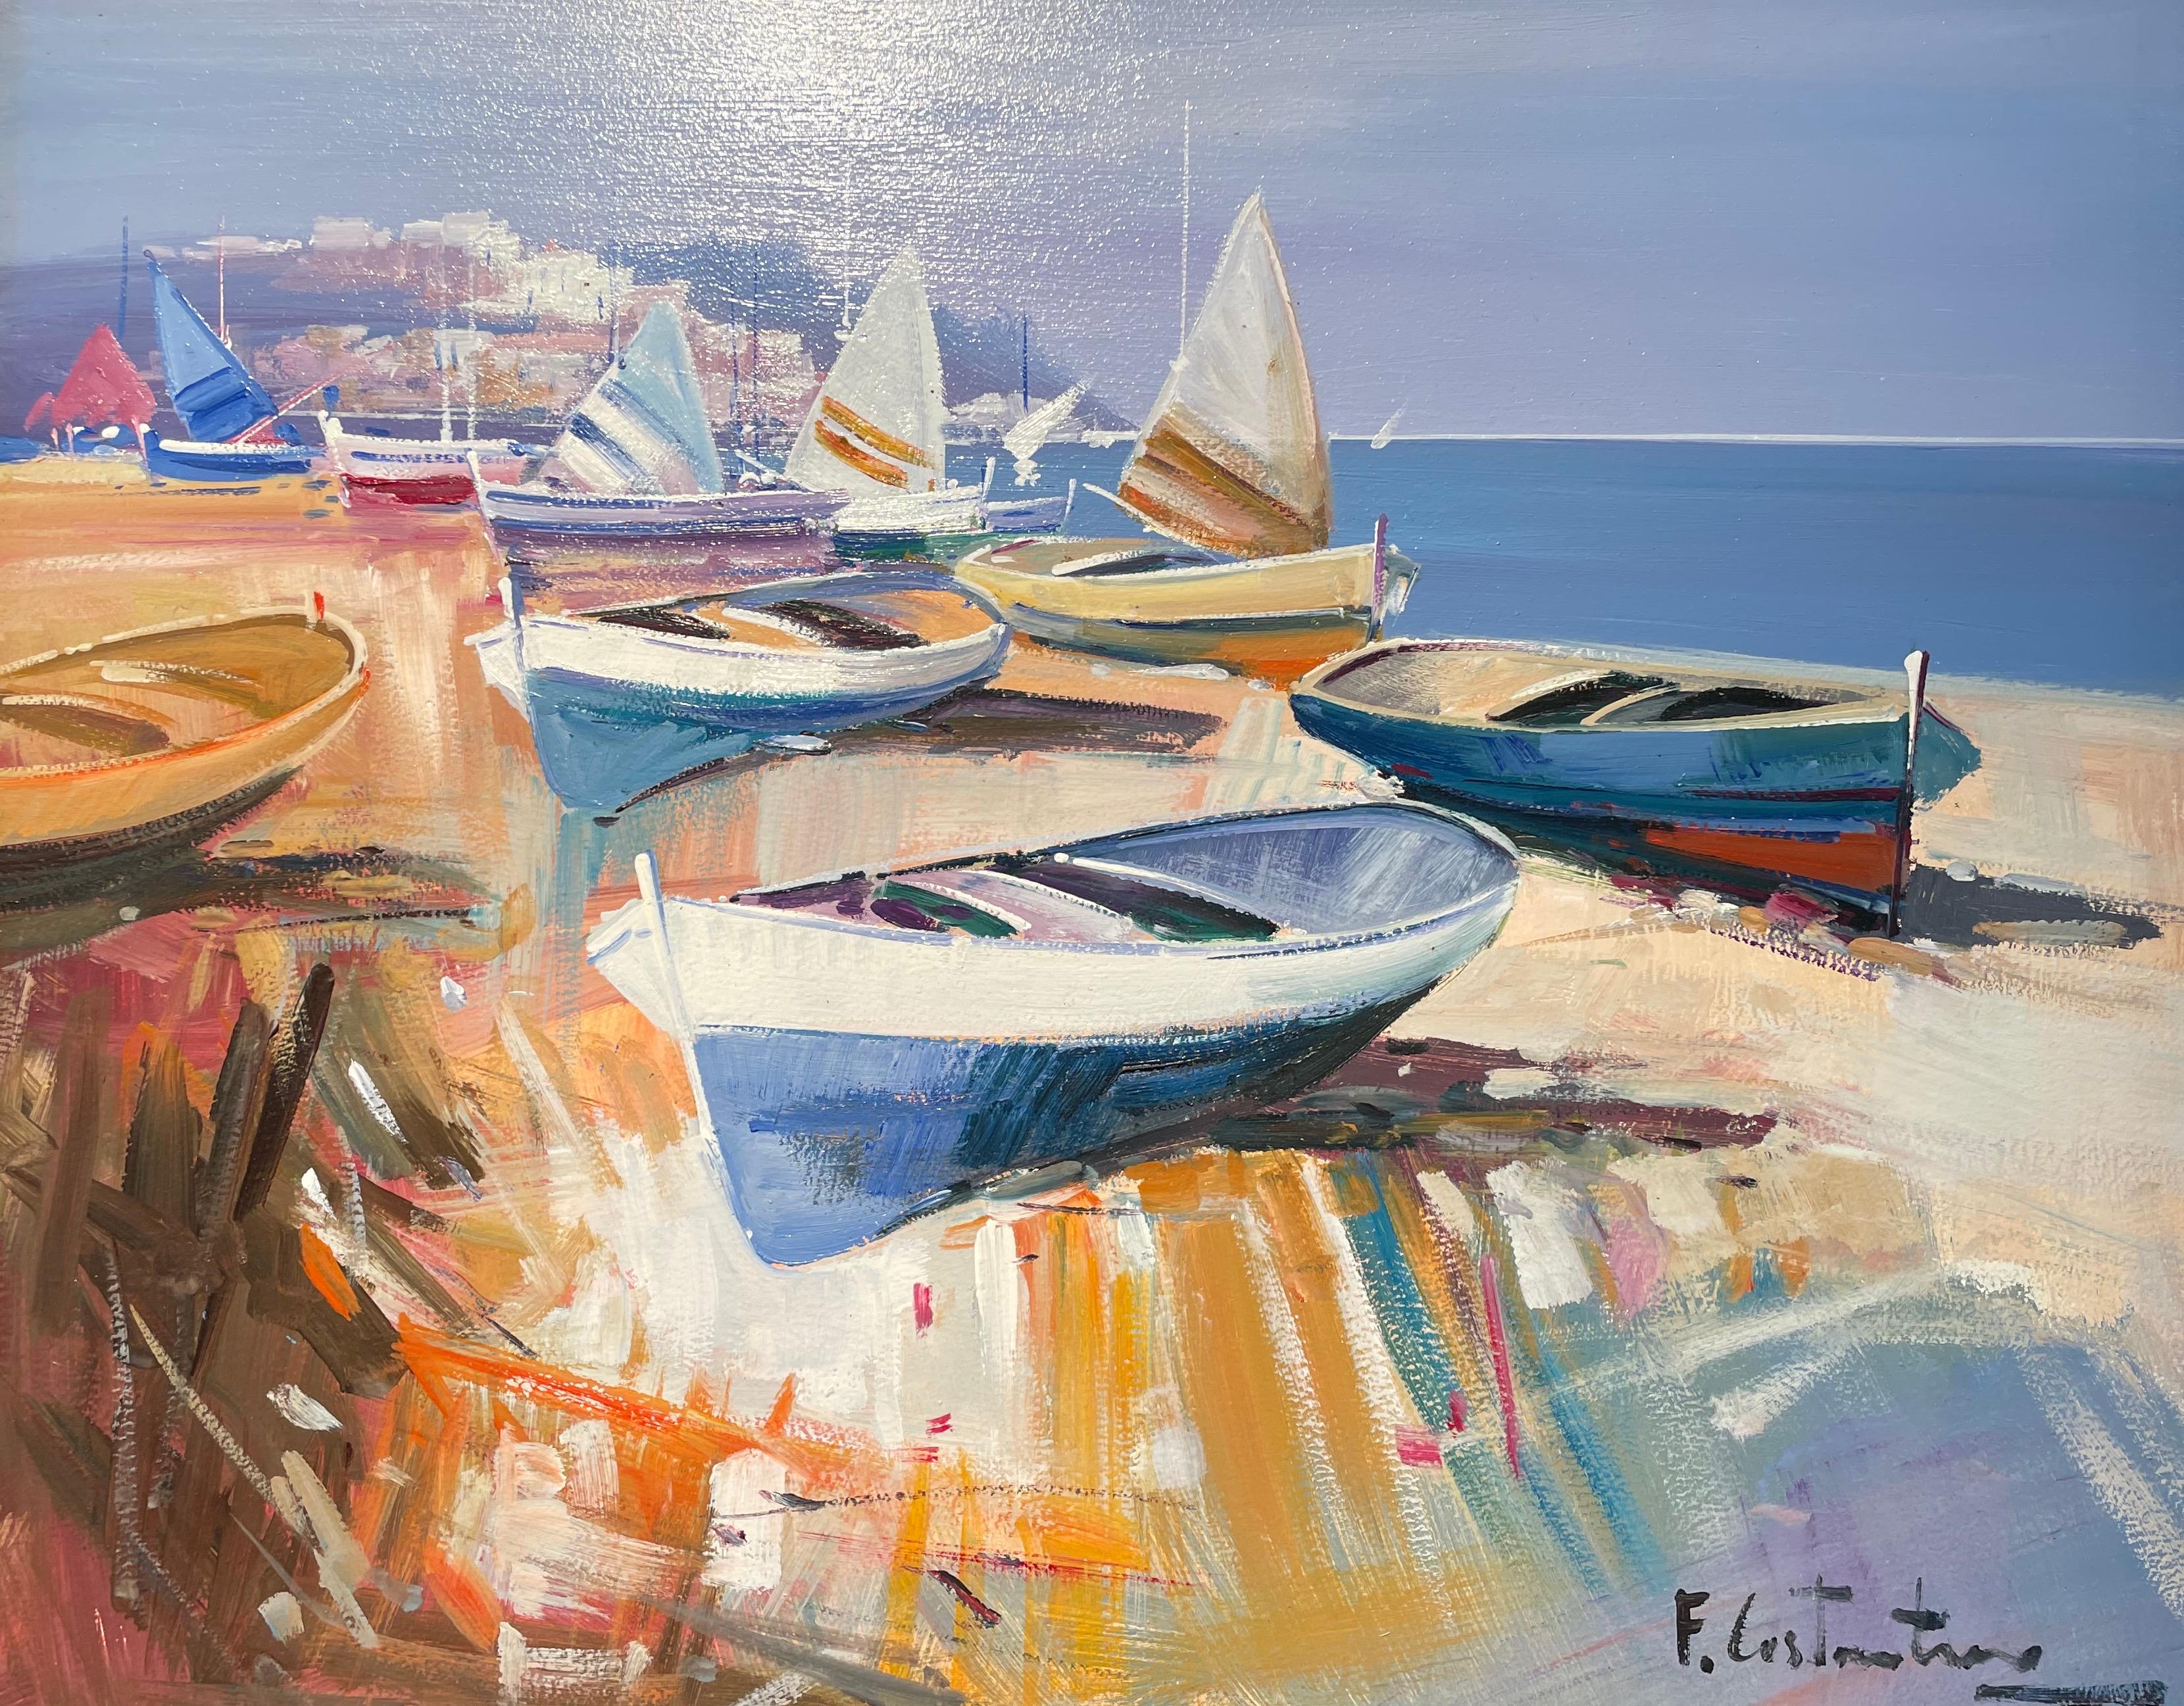 « Boats on the Shore » - Peinture contemporaine colorée représentant des bateaux, du sable et de la mer  - Painting de Fabio Constantino